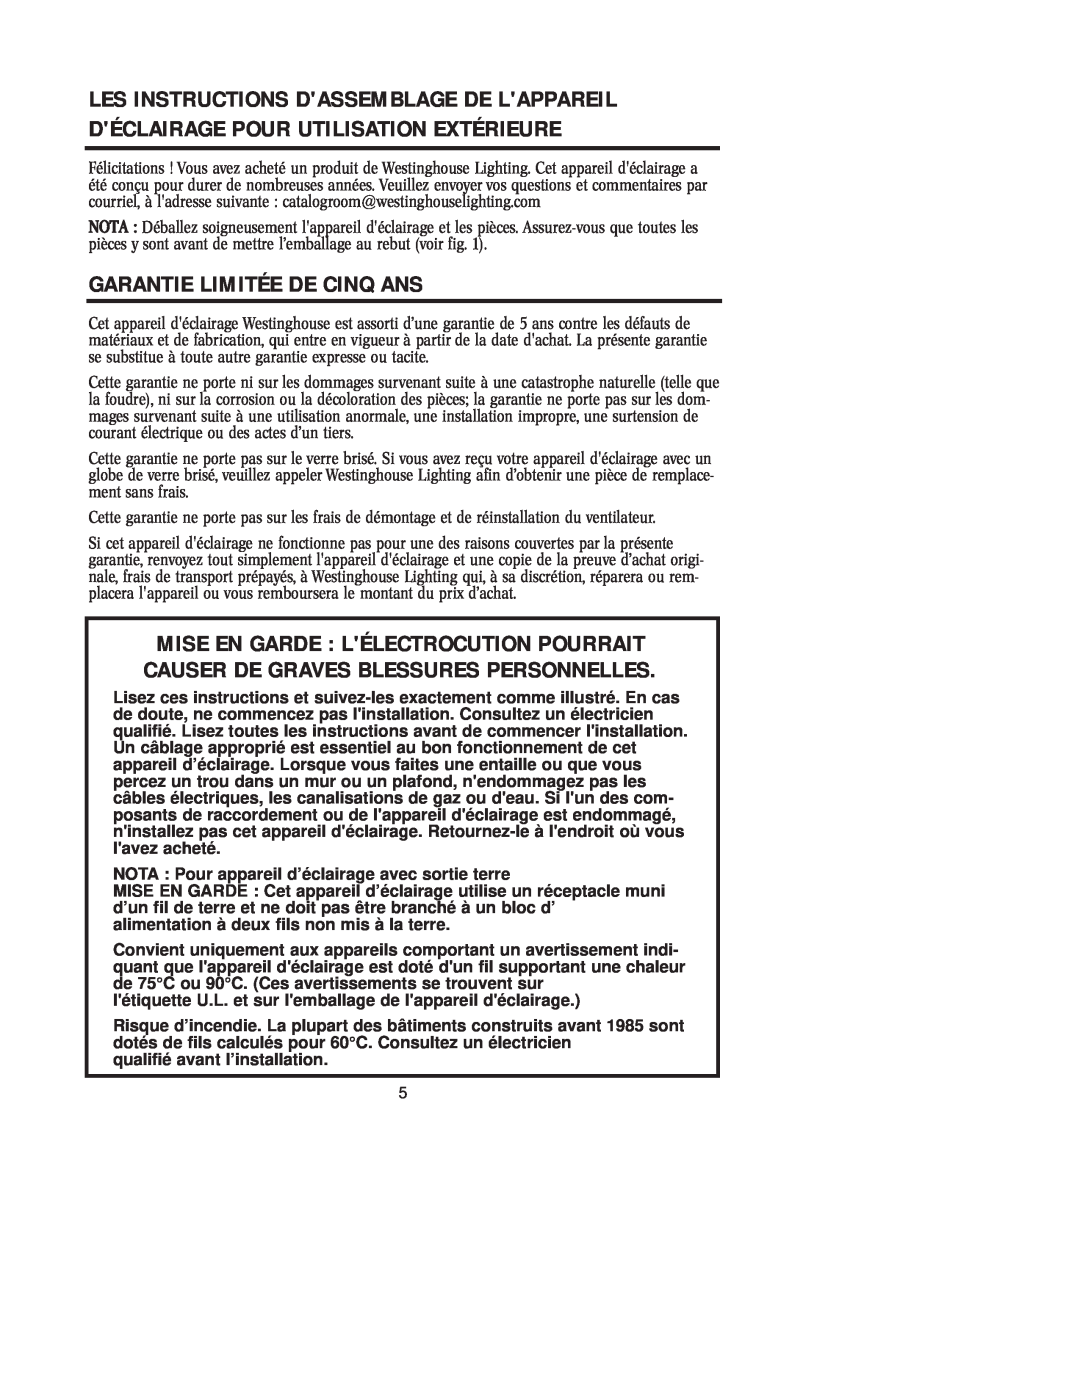 Westinghouse W-125 owner manual Garantie Limitée De Cinq Ans 